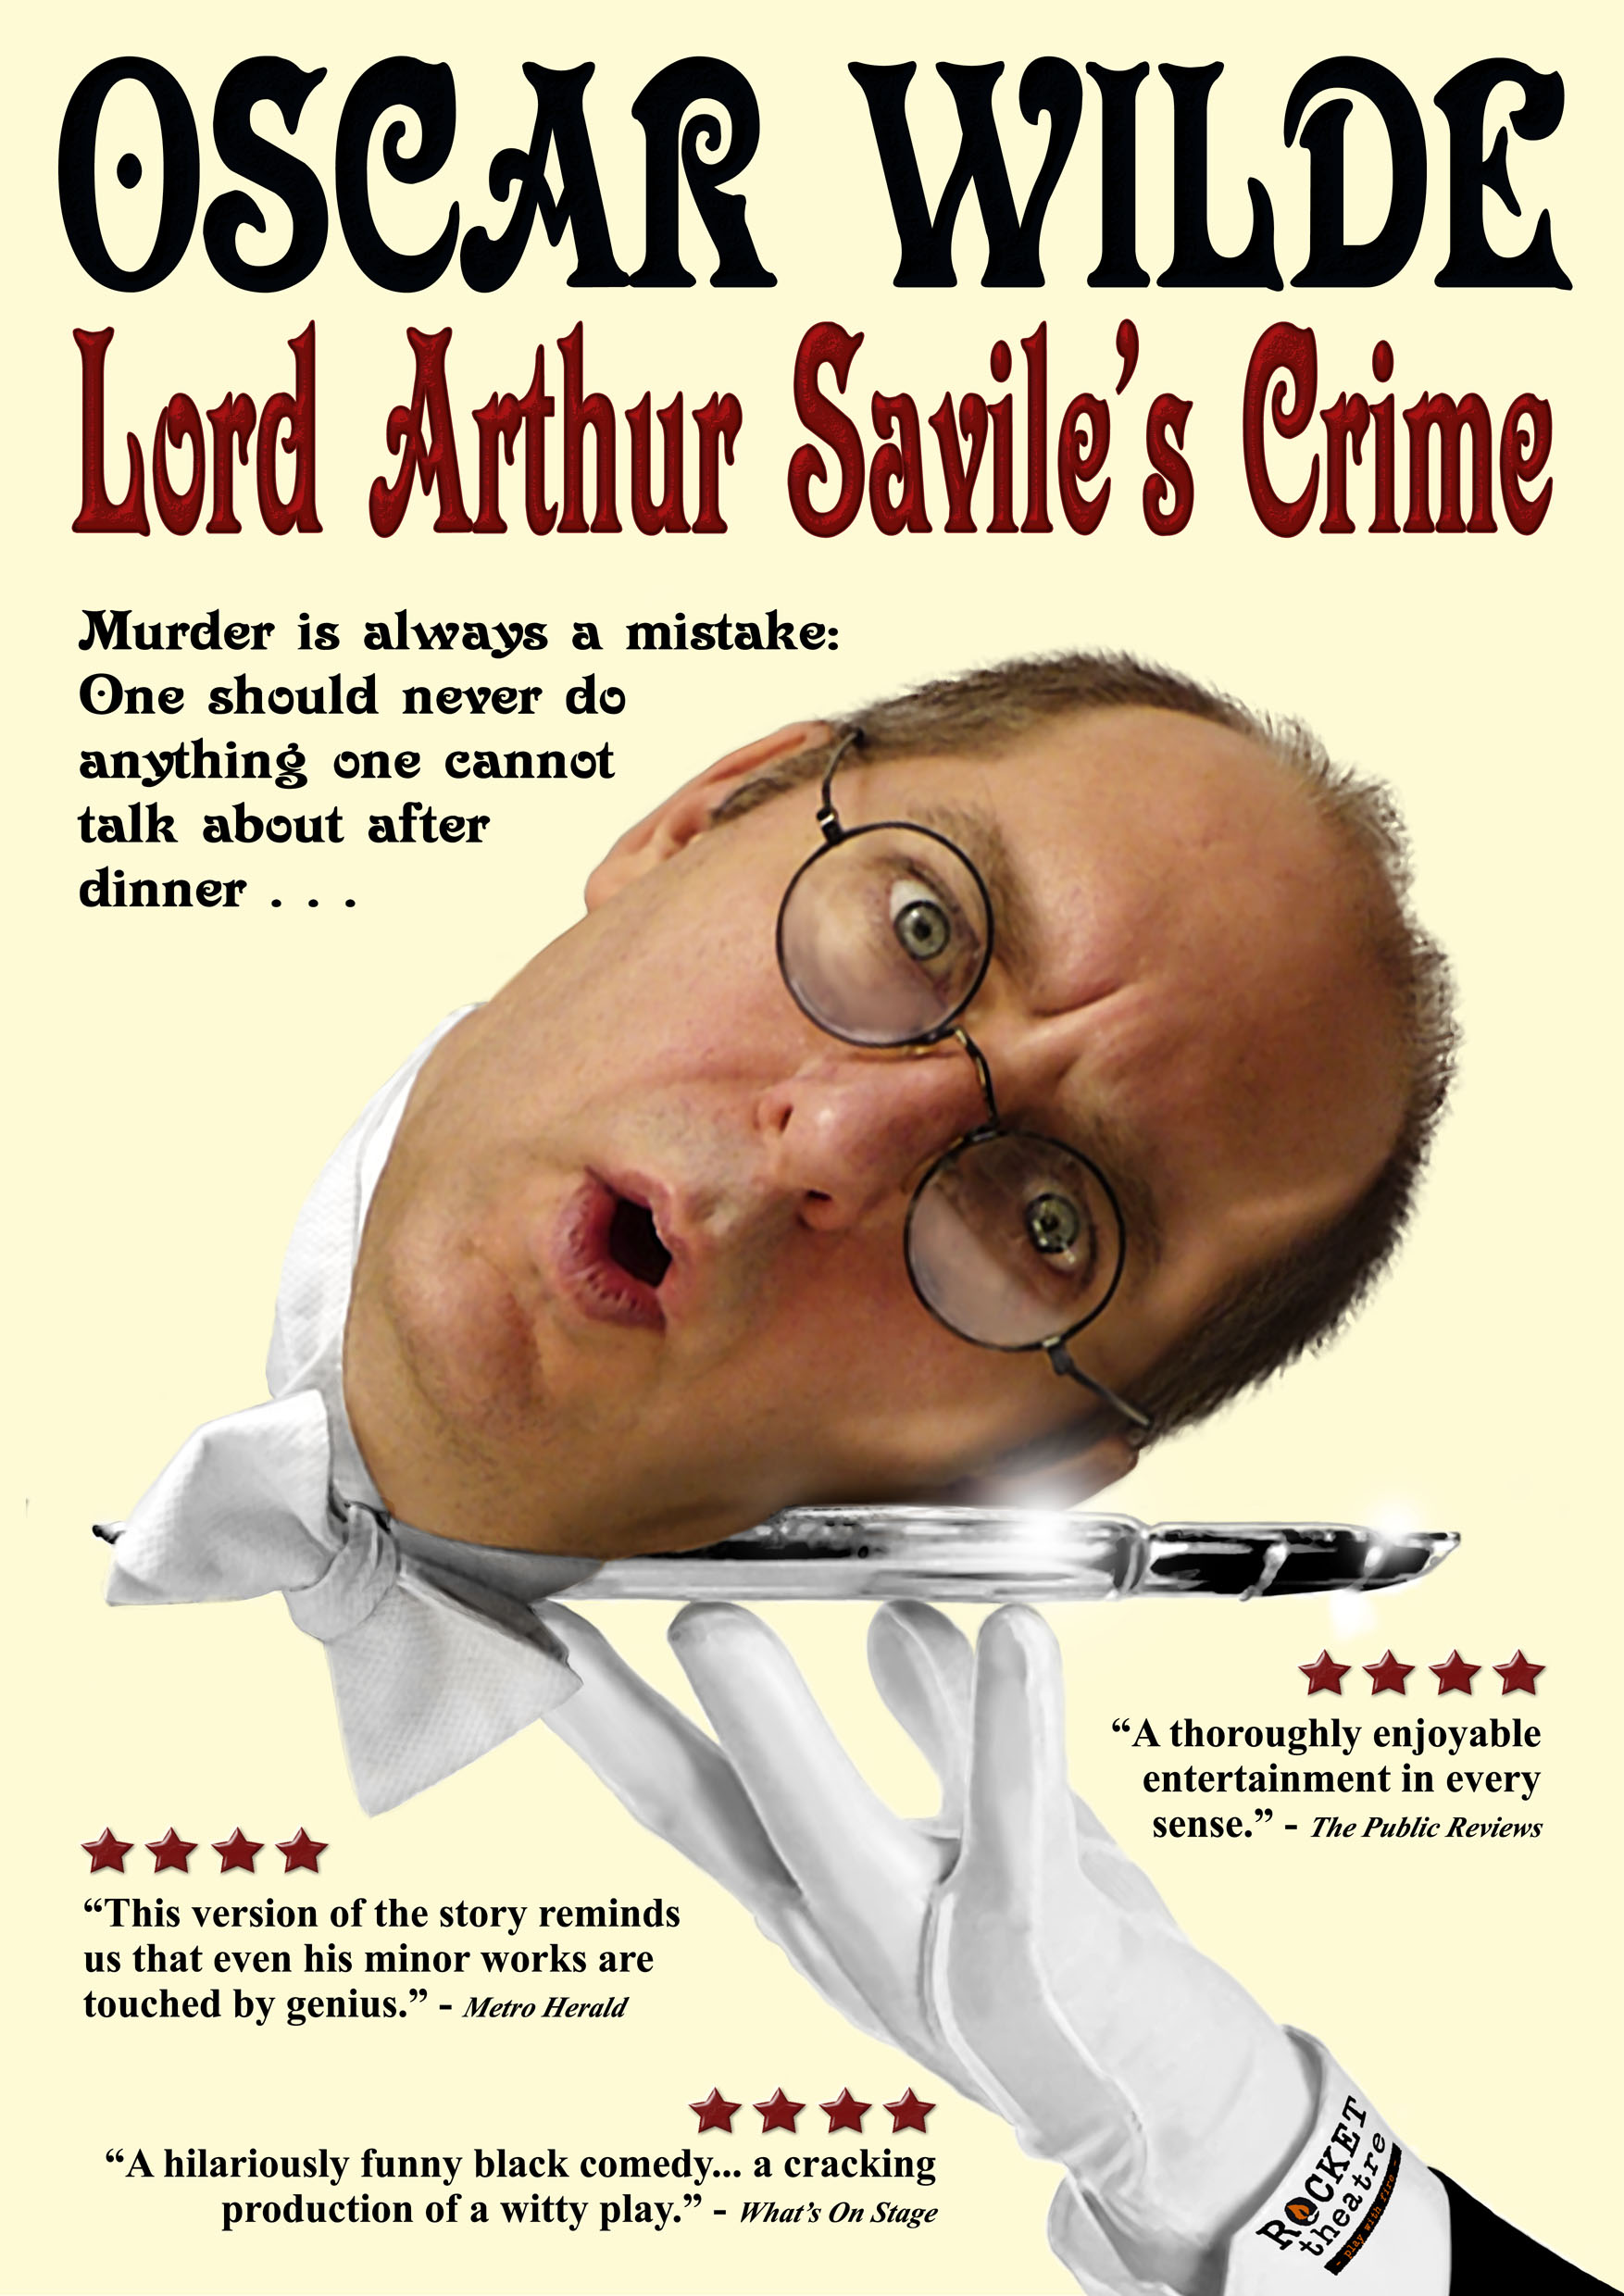 Lord Arthur Savile's Leaflet